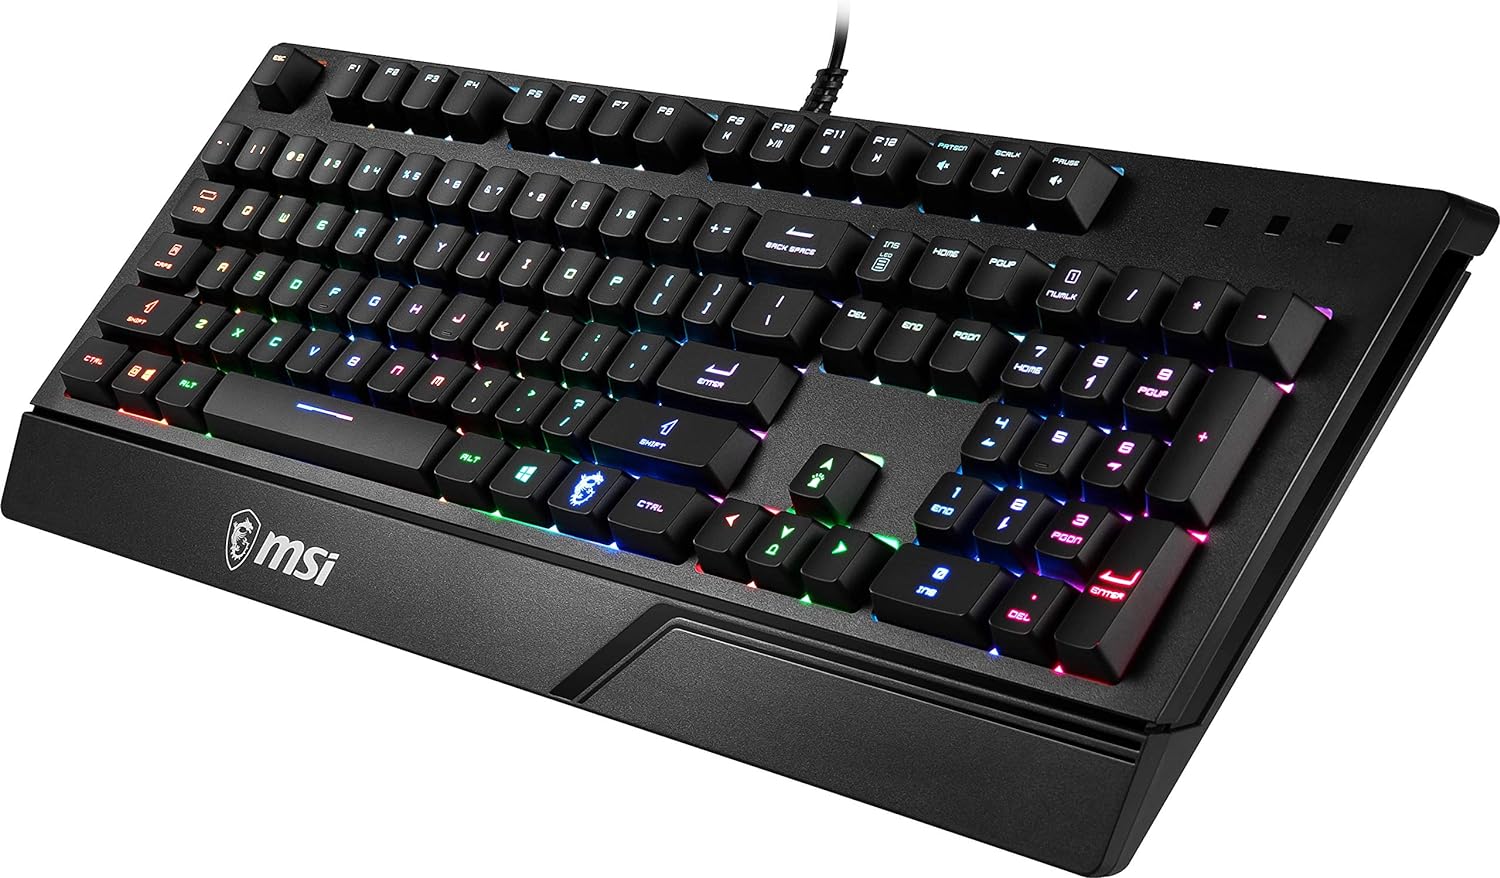 MSI Gaming Backlit RGB Dedicated Hotkeys Anti-Ghosting Water Resistant Gaming Keyboard (Vigor GK20 US), Black - Geek Tech